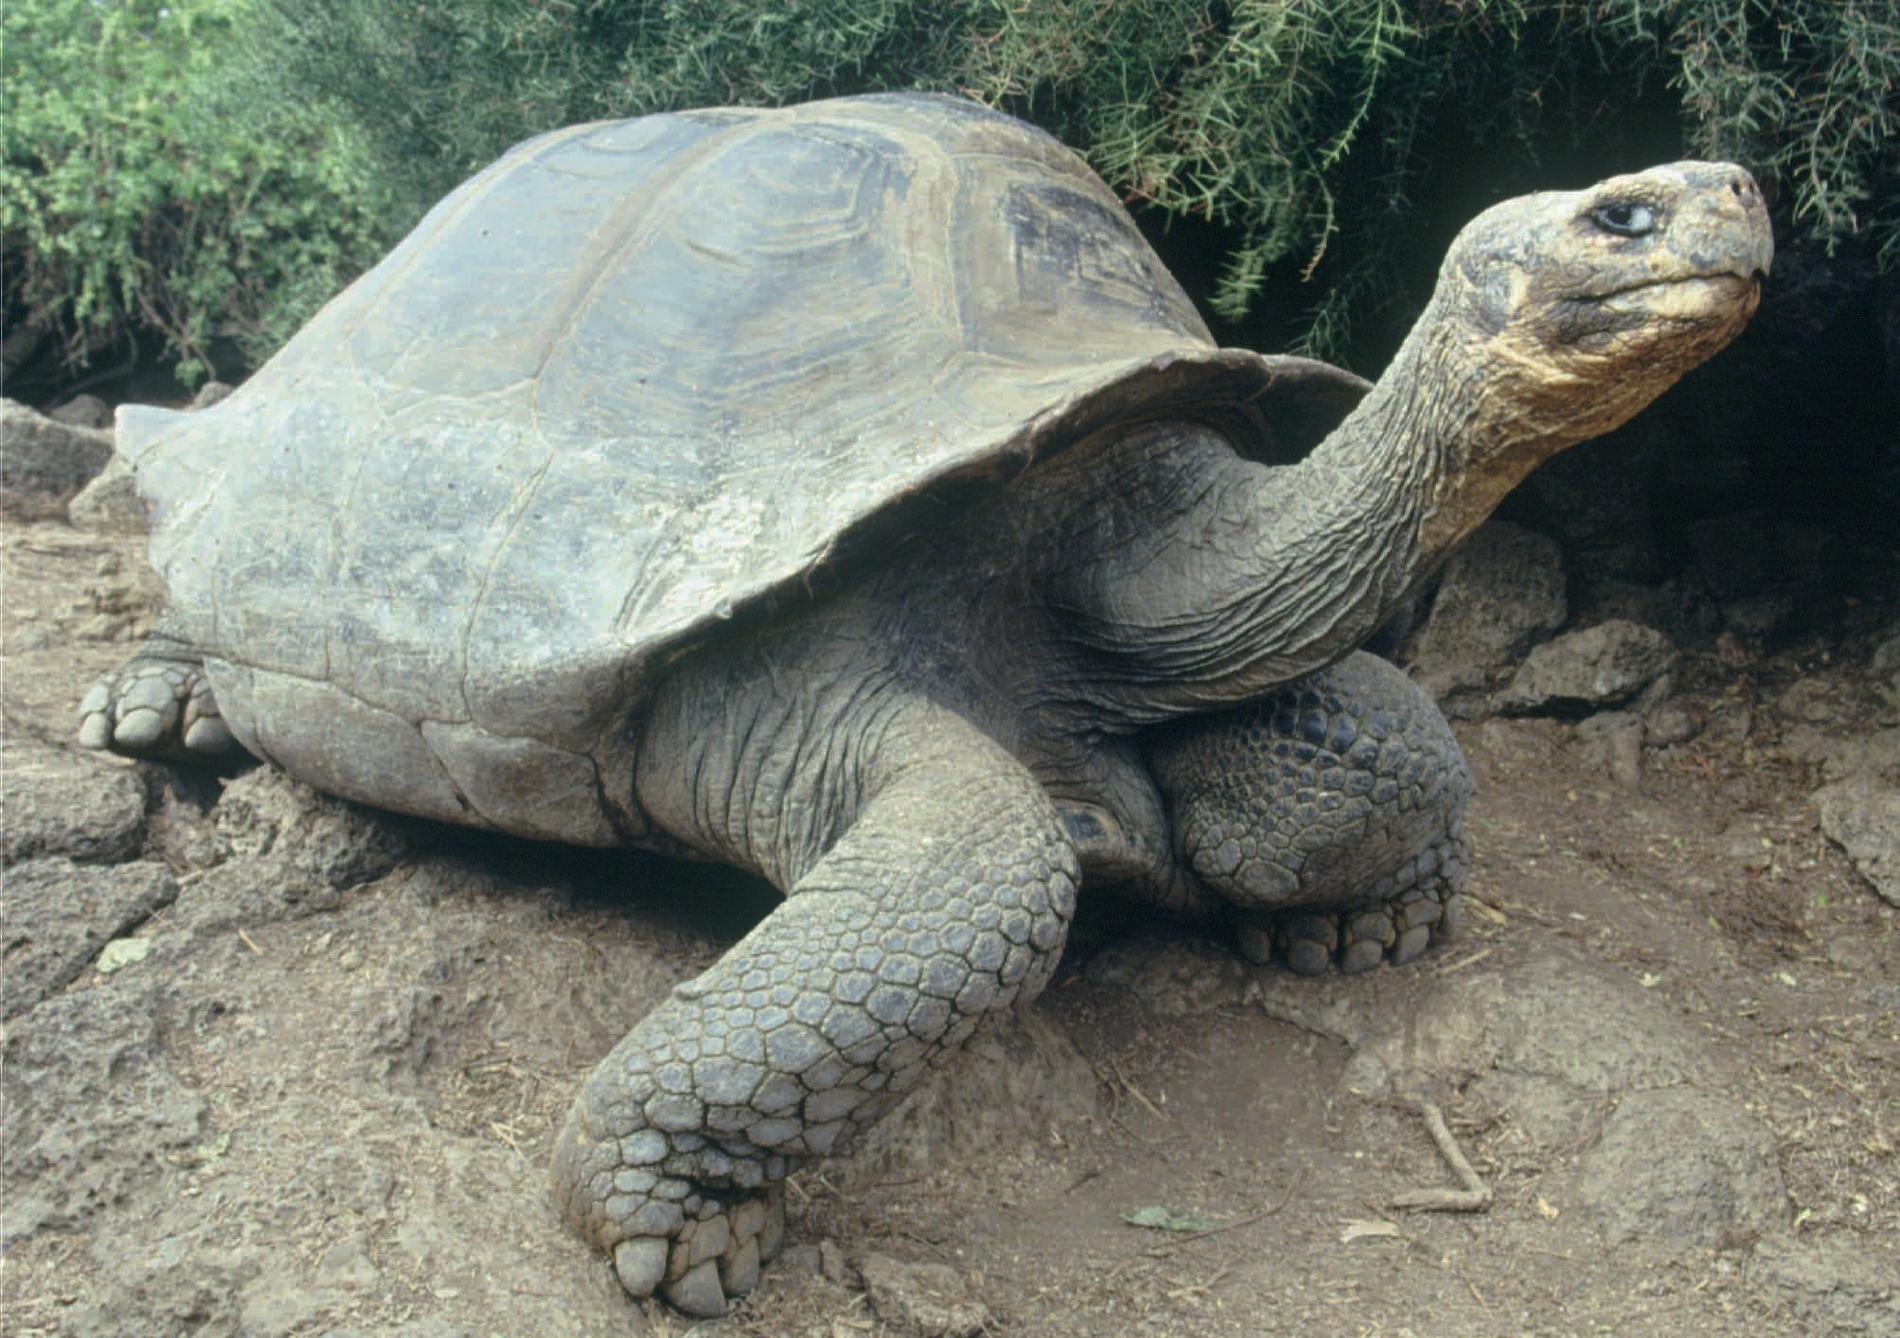 Jättesköldpaddan lever också på Isabela Island men inte i närheten av vulkanen Wolf. På ön finns även vulkanen Sierra som på senaste tiden visat aktivitet. Om Sierra får ett utbrott hotas jättesköldpaddan.